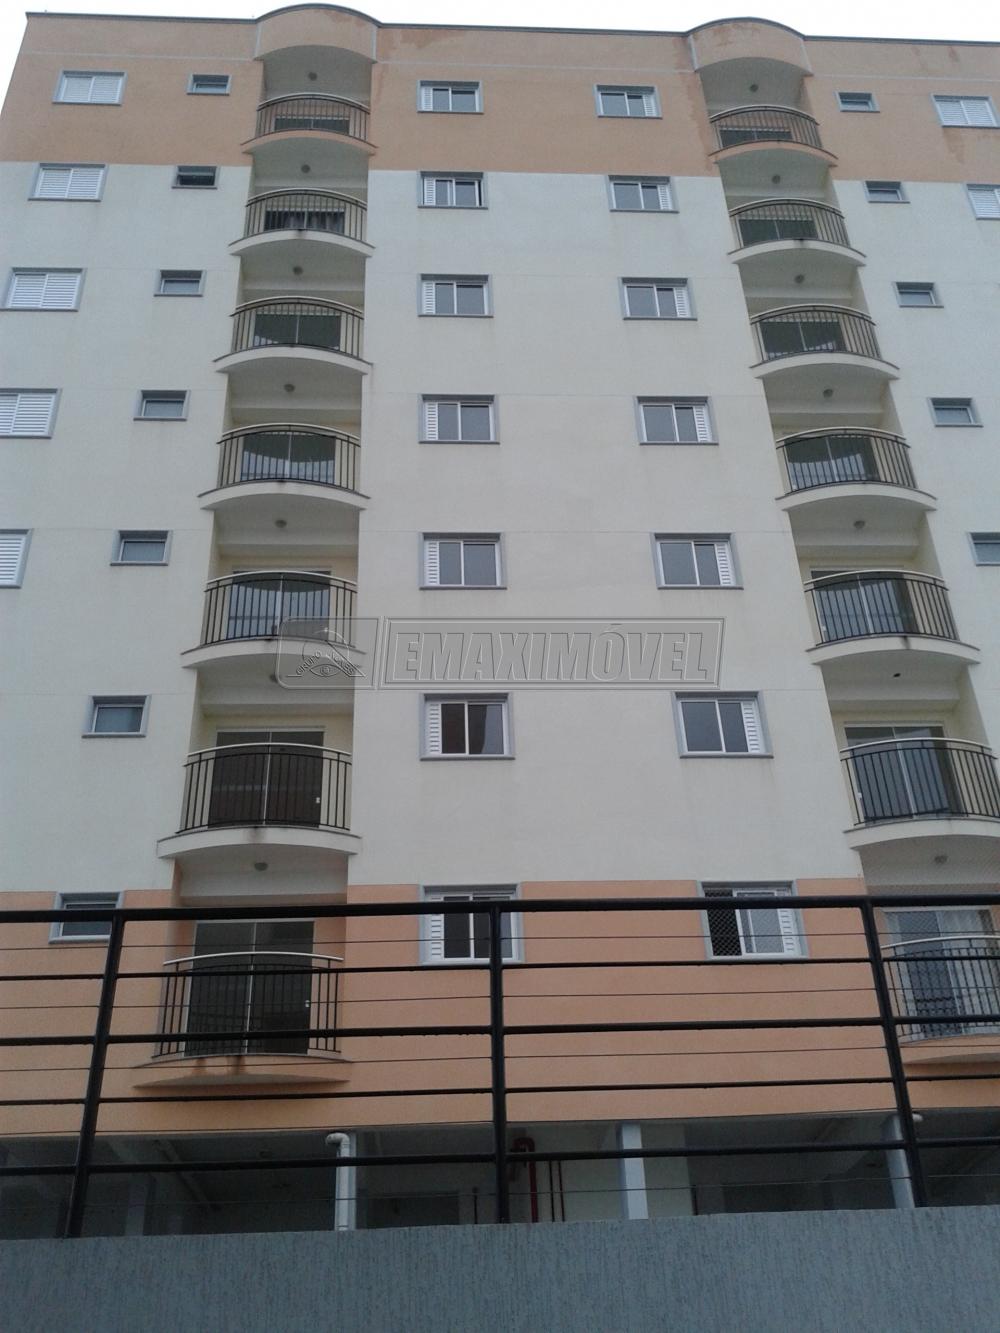 Comprar Apartamento / Cobertura em Sorocaba R$ 272.000,00 - Foto 1